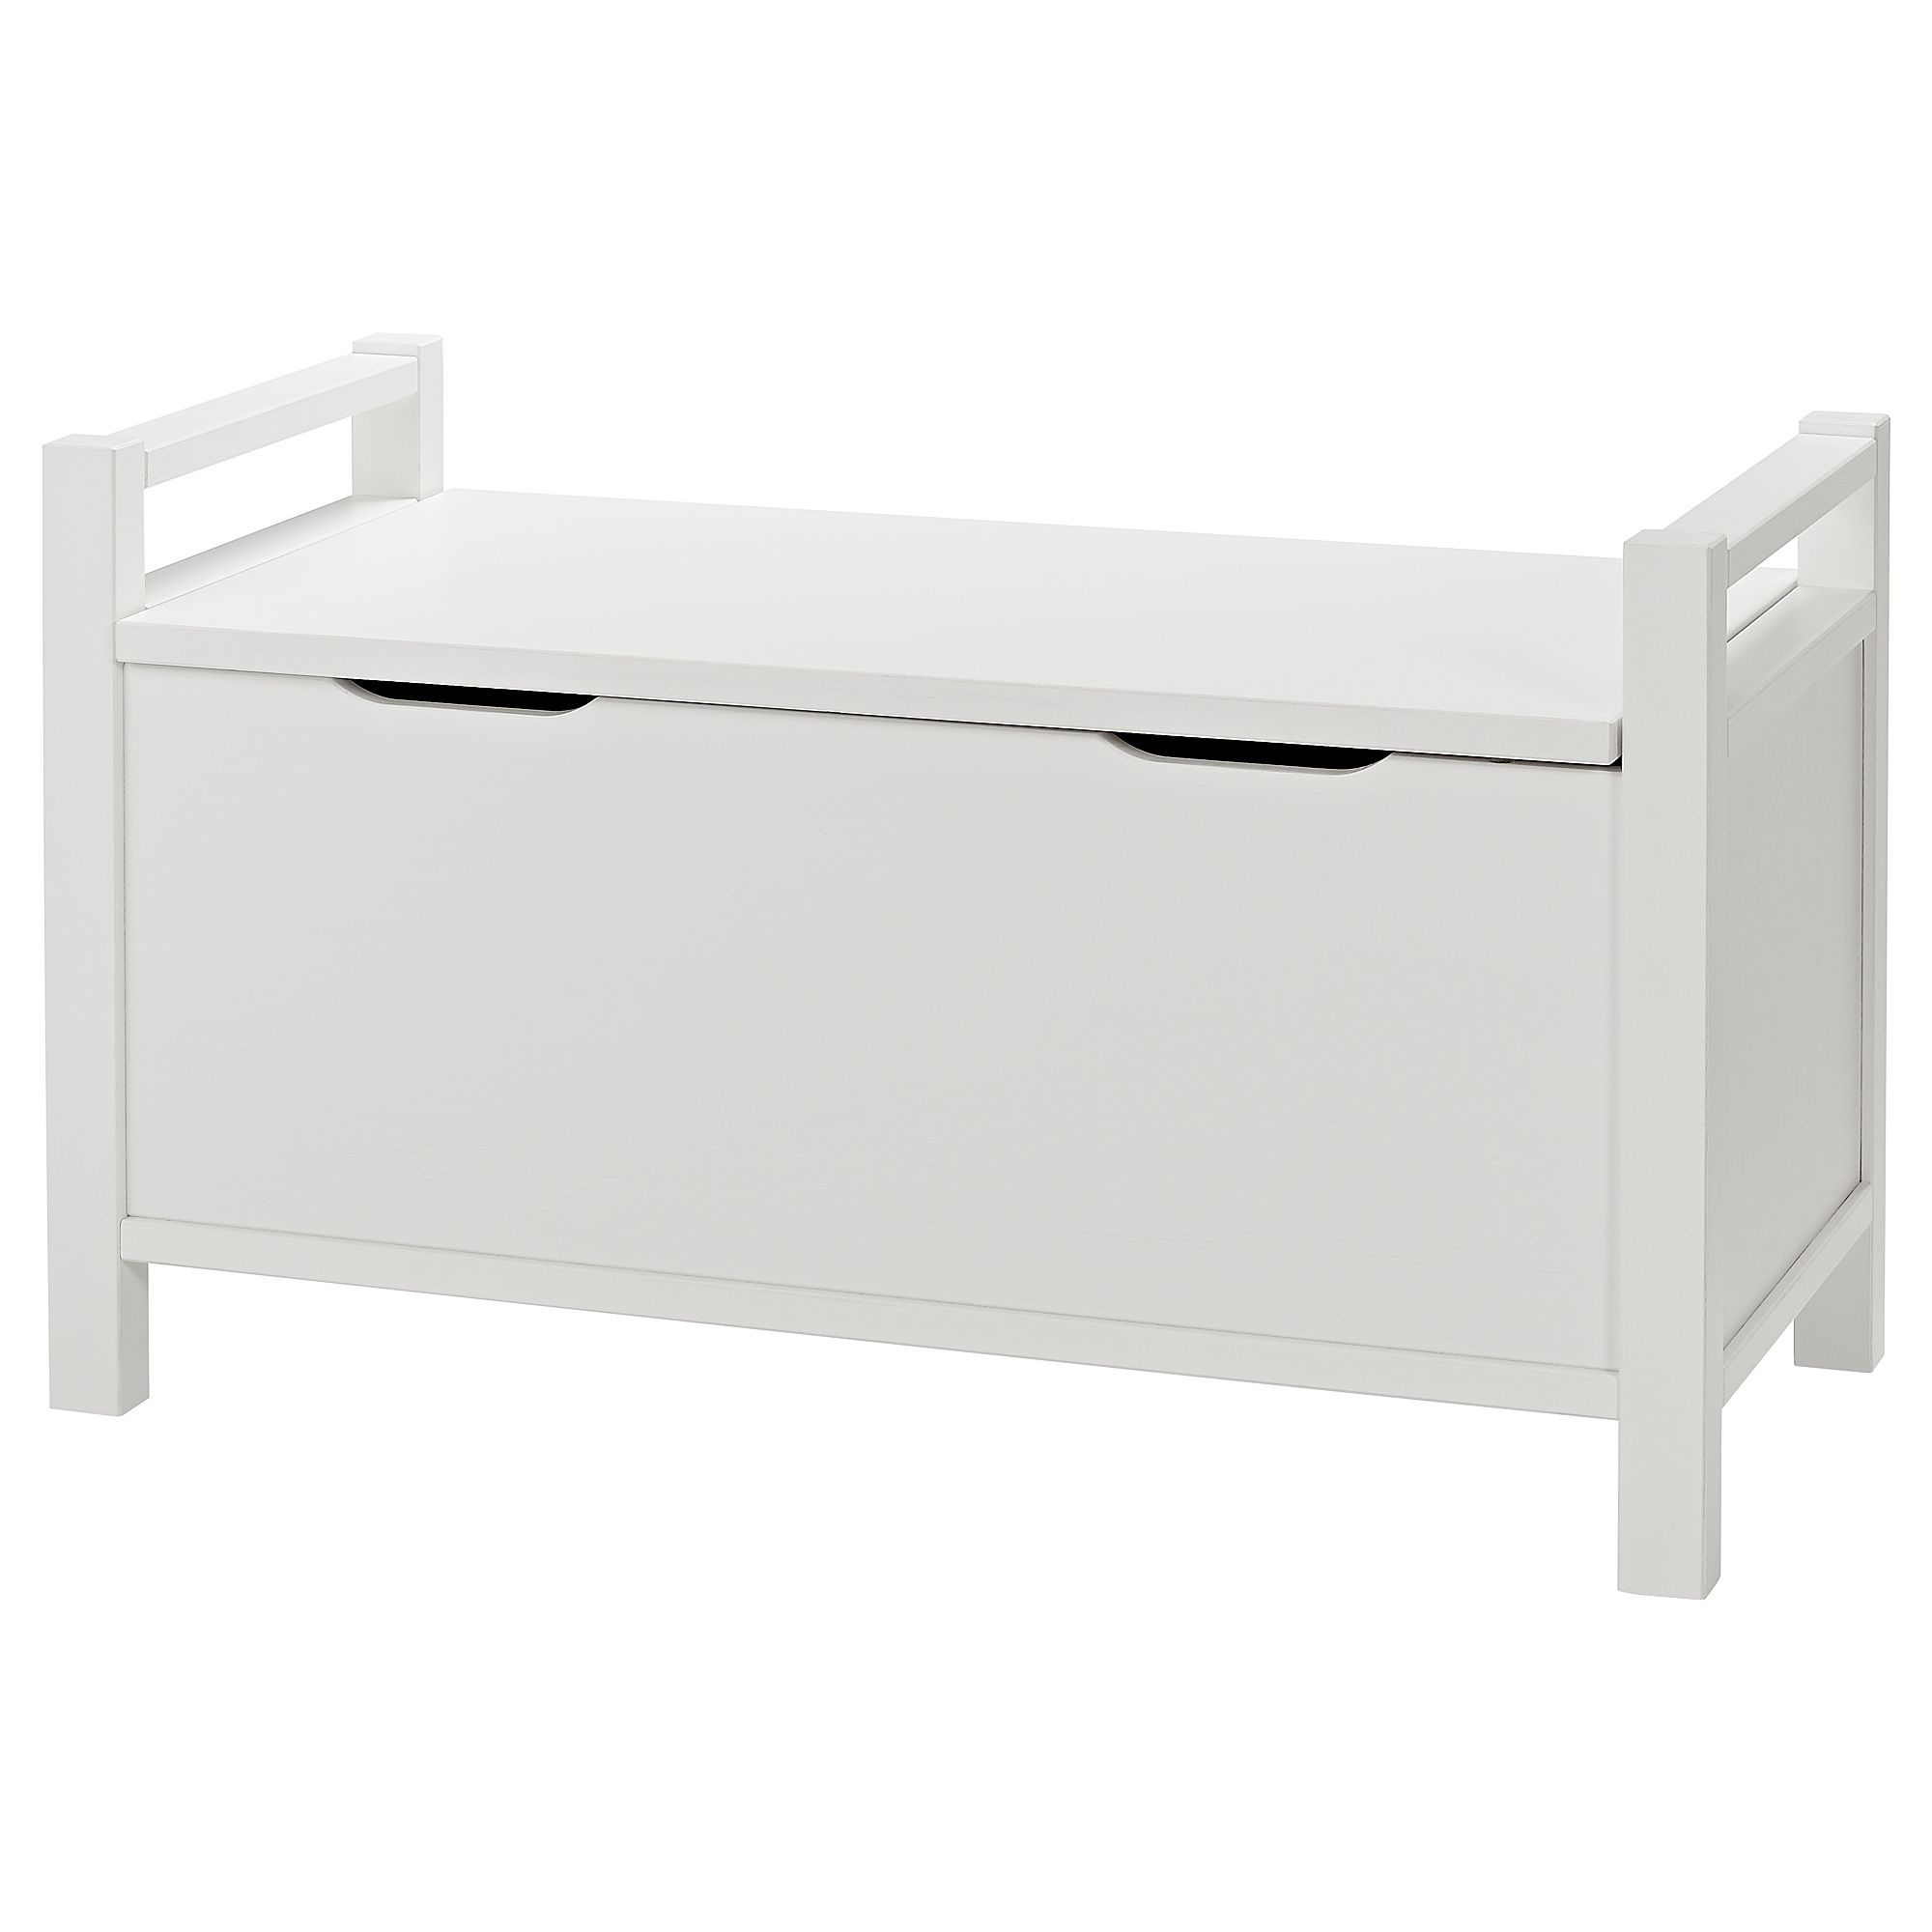 Hemnes Storage Bench - White White Stain | Banc Coffre ... tout Coffre De Jardin Ikea